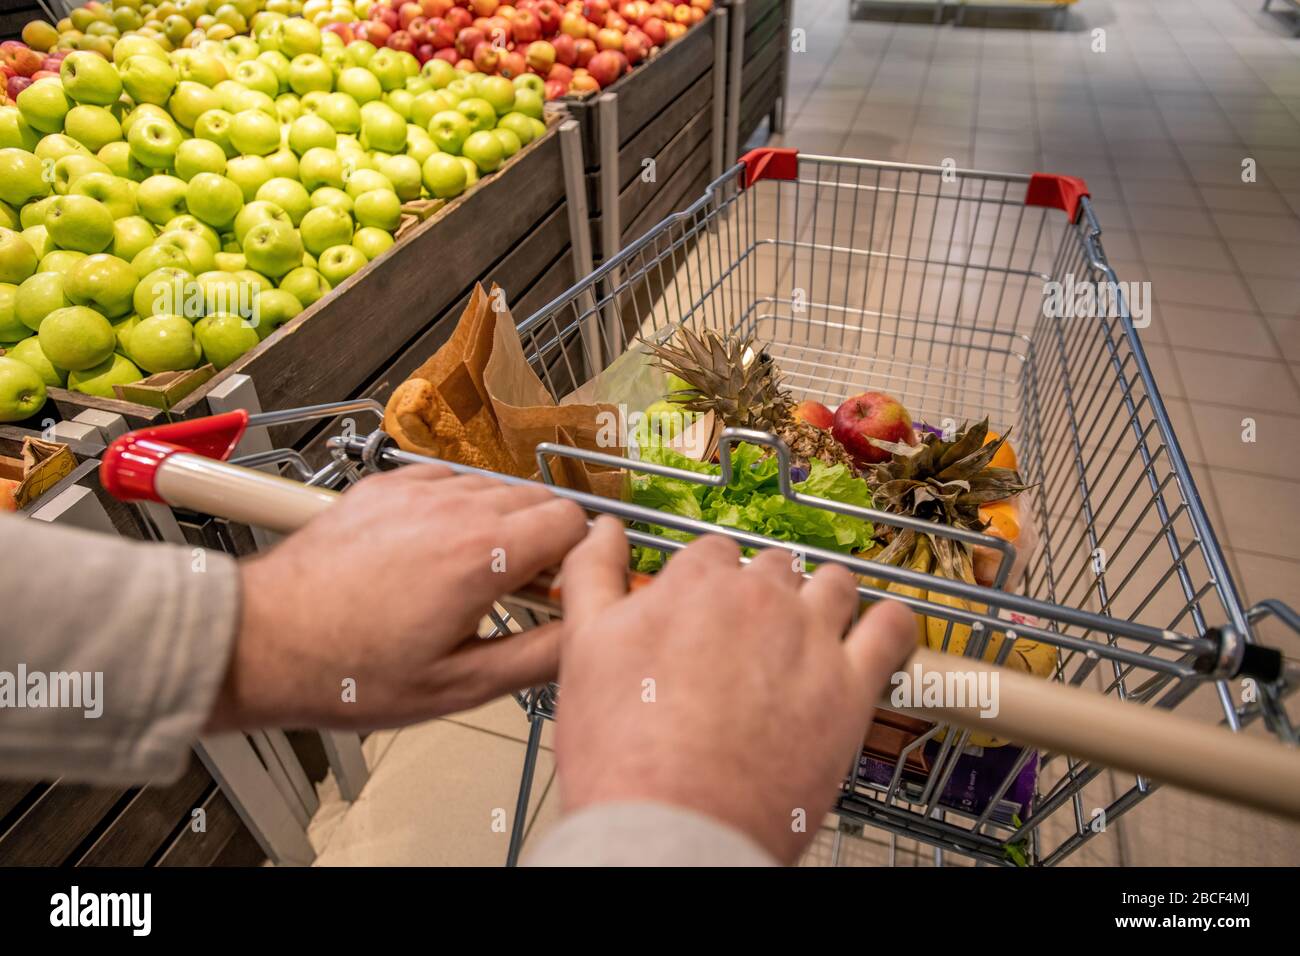 Hände von alten männlichen Kunden, die den Einkaufswagen mit Lebensmitteln bedrängen, während sie mit frischen Äpfeln im Supermarkt auf dem Obsttäfelchen unterwegs sind Stockfoto